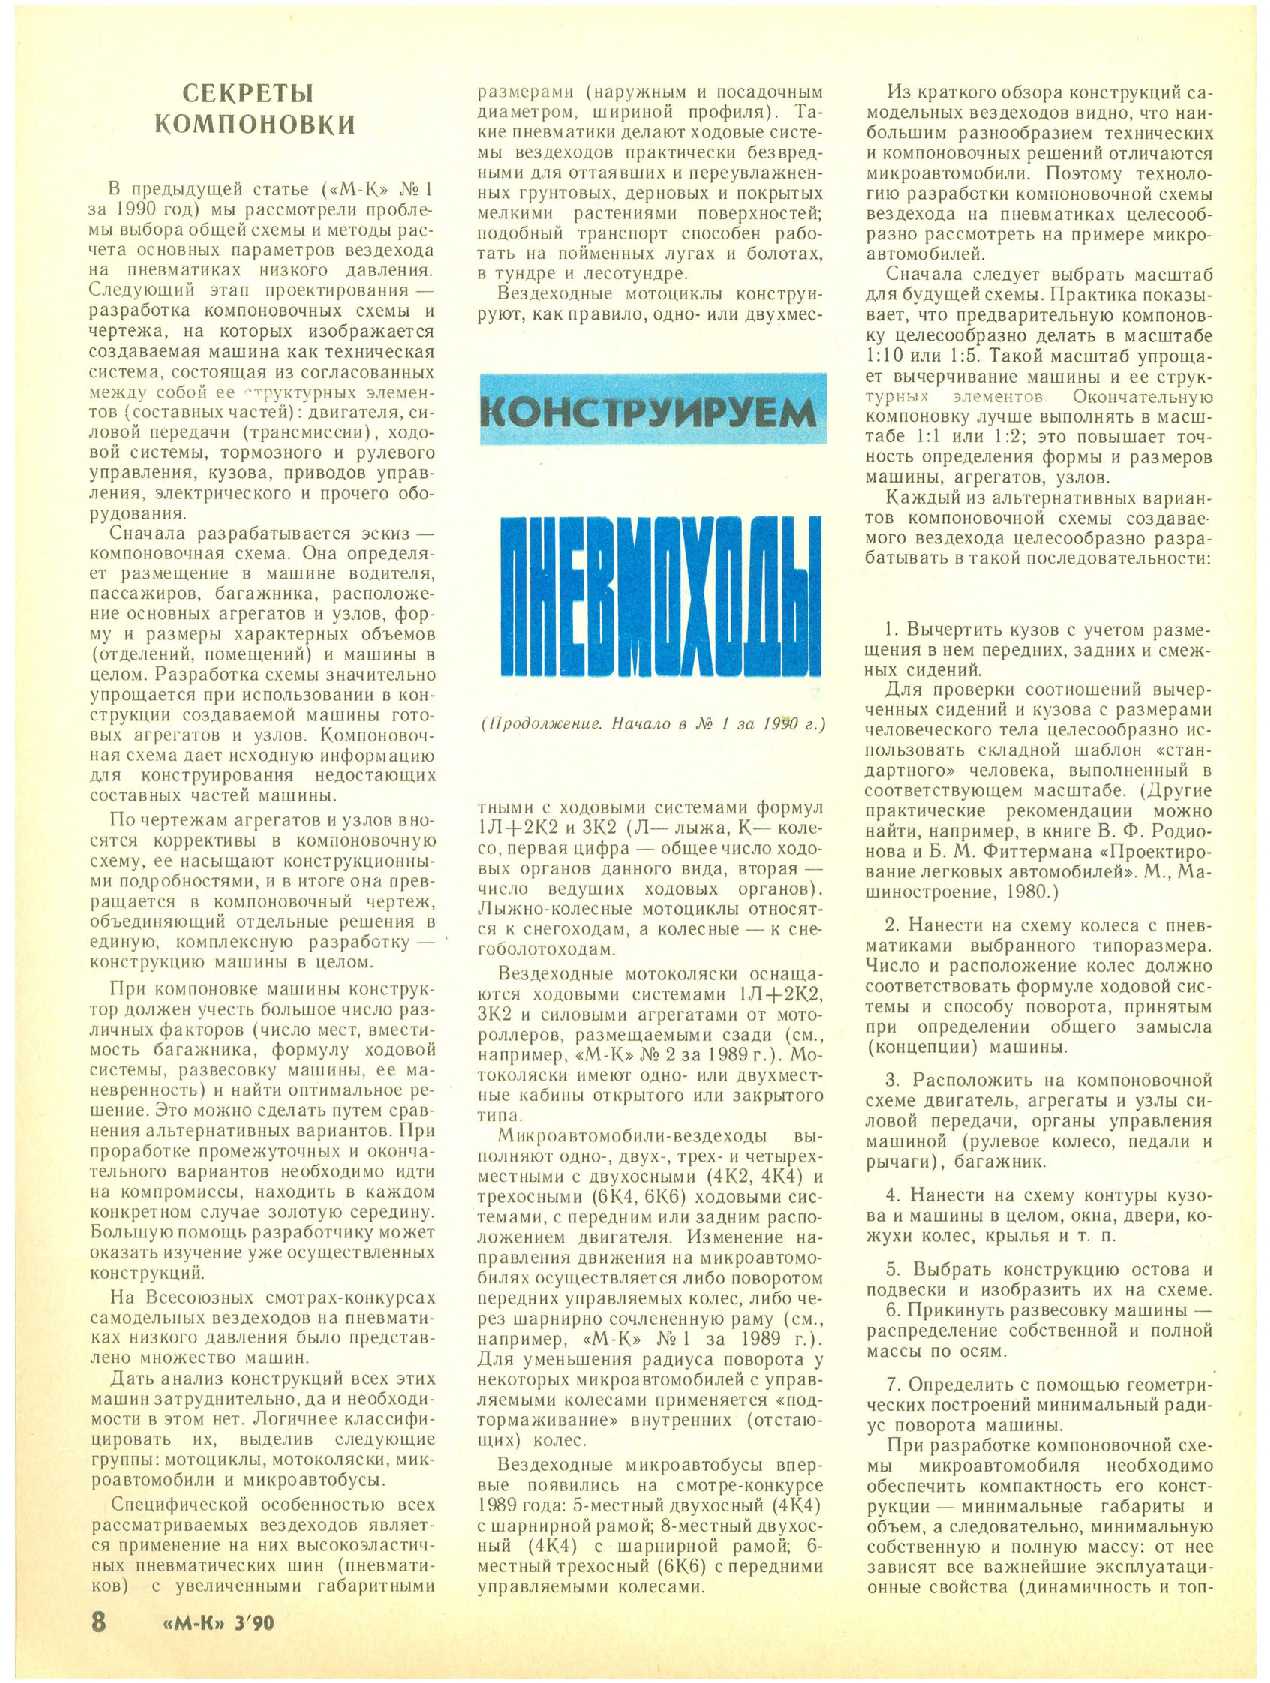 МК 3, 1990, 8 c.